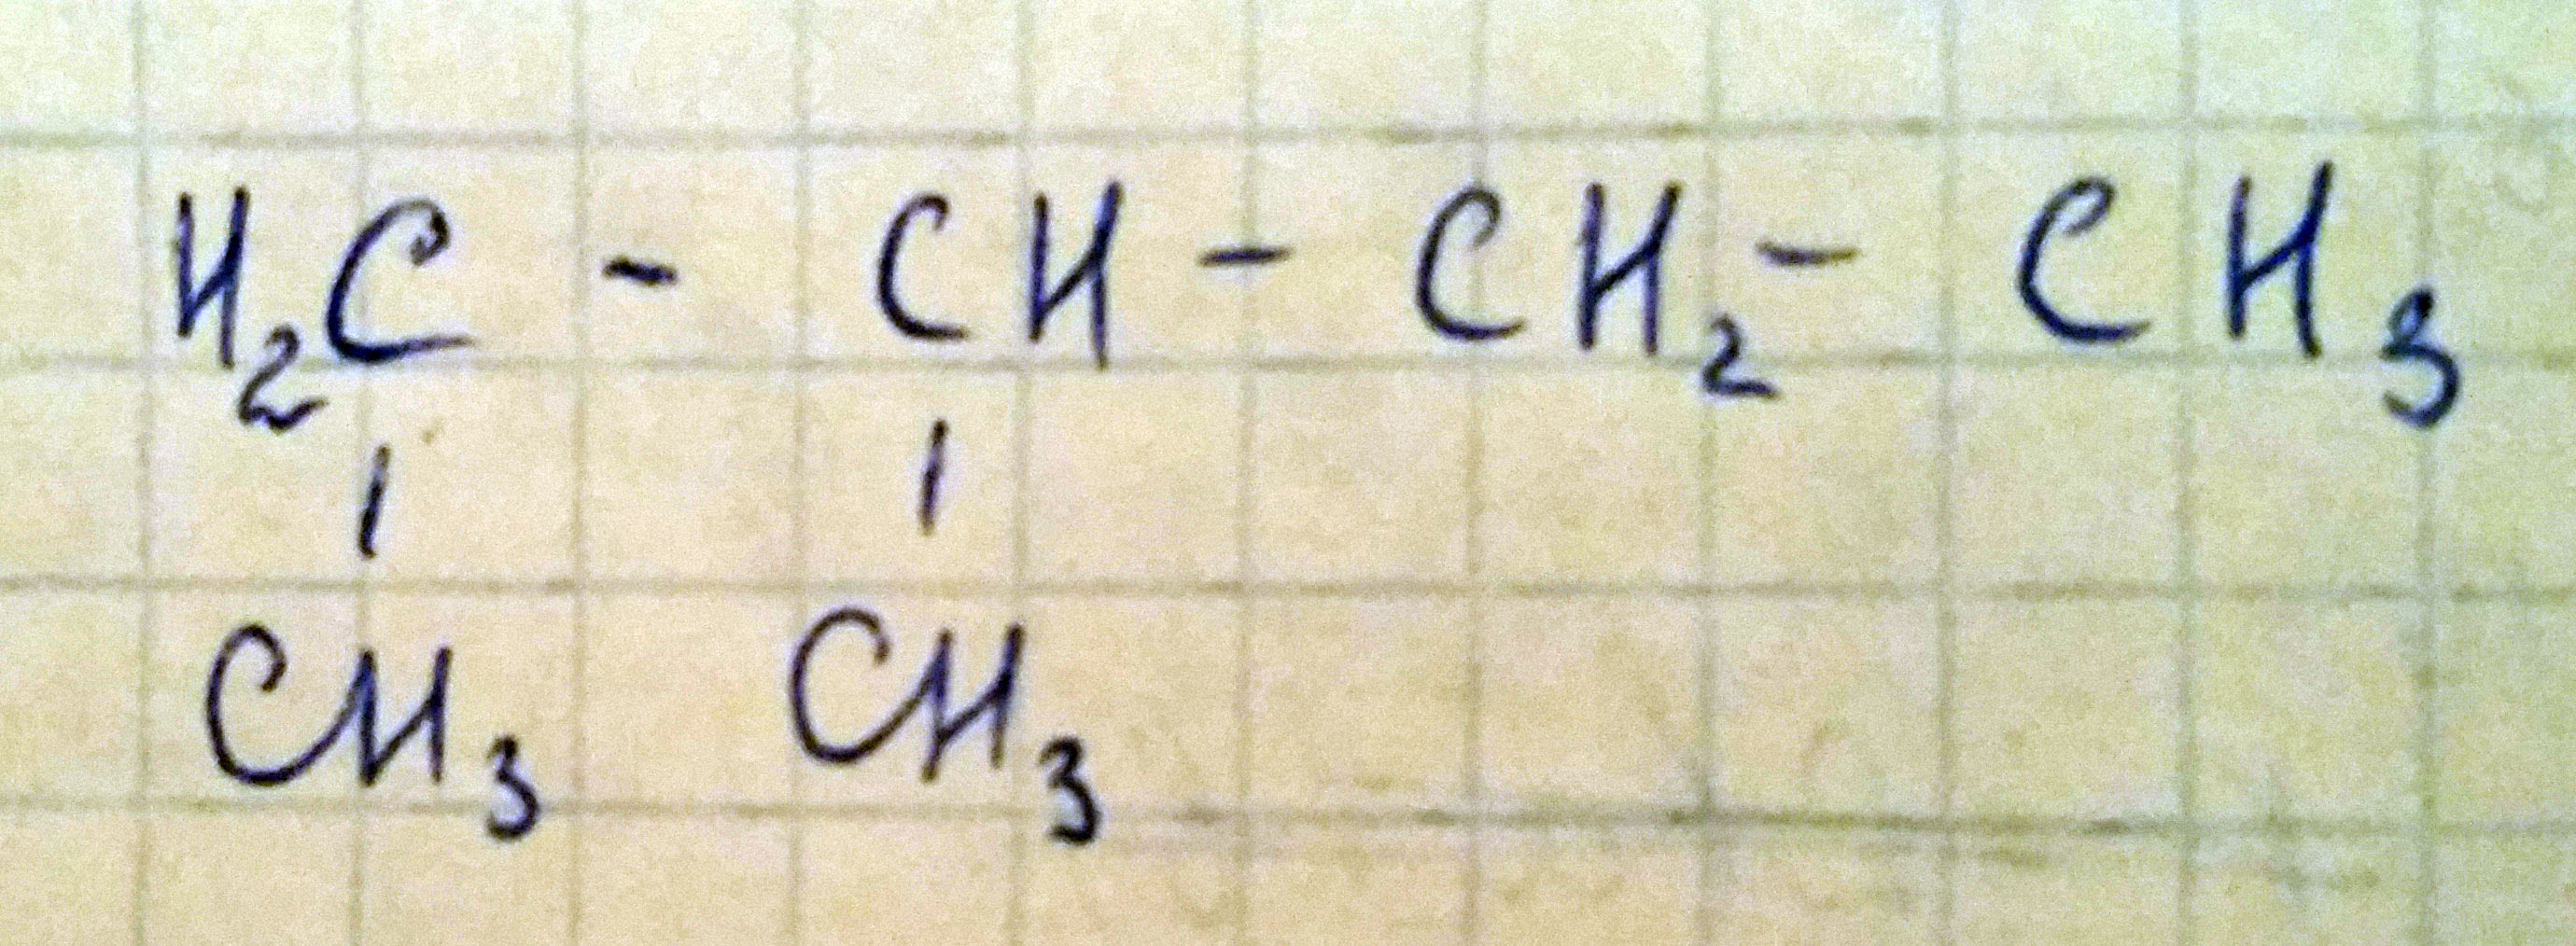 Составьте структурную форму для 1,2-диметилбутана.